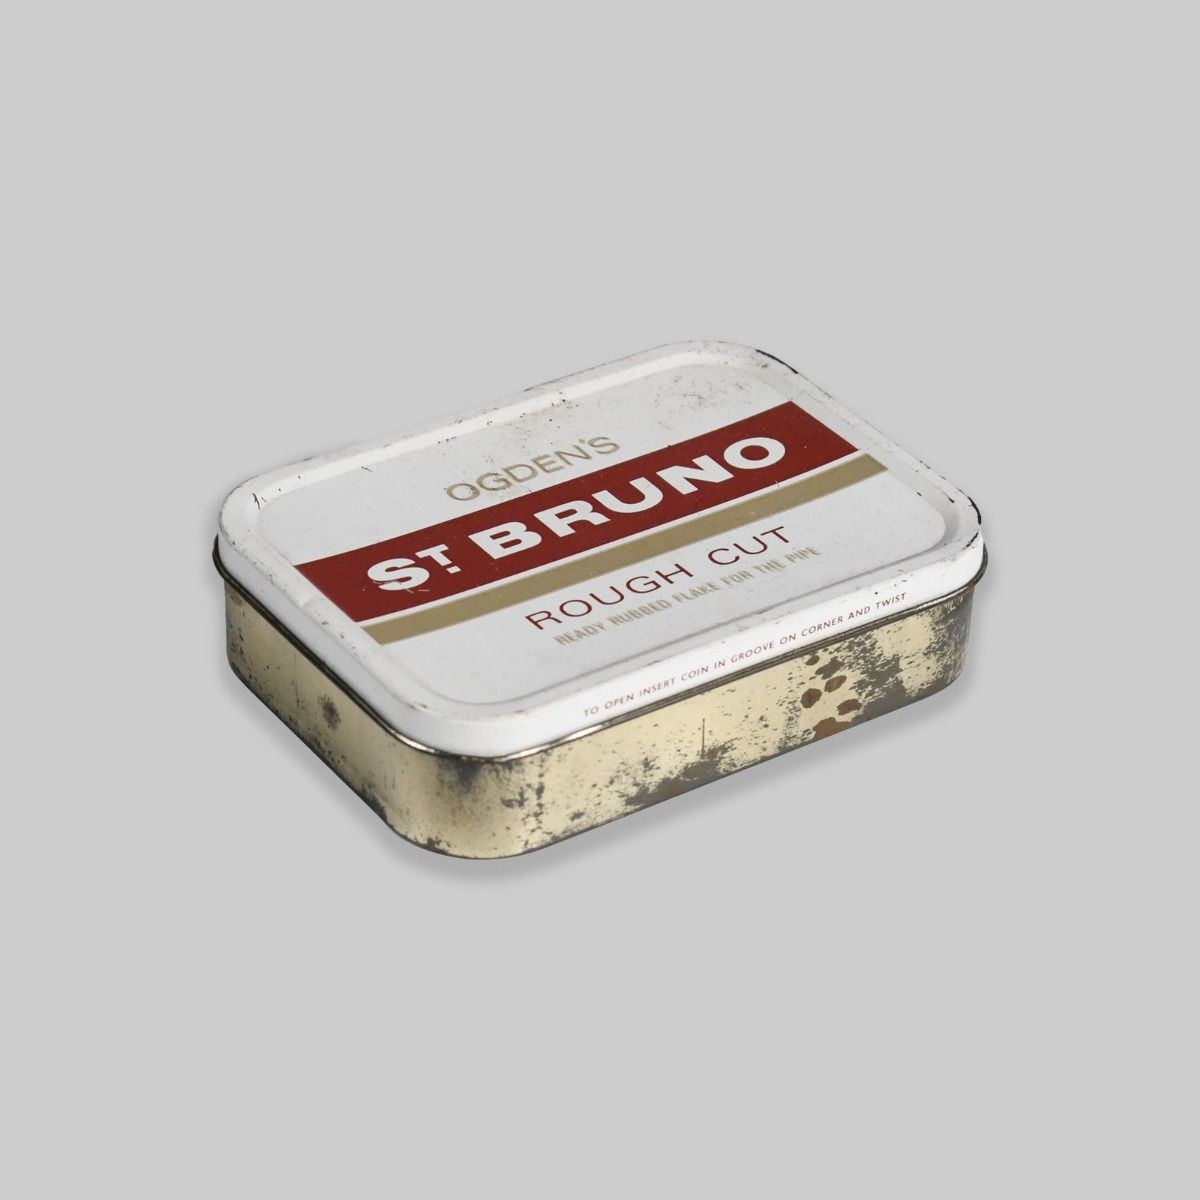 Vintage Ogden's St Bruno Tobacco Tin